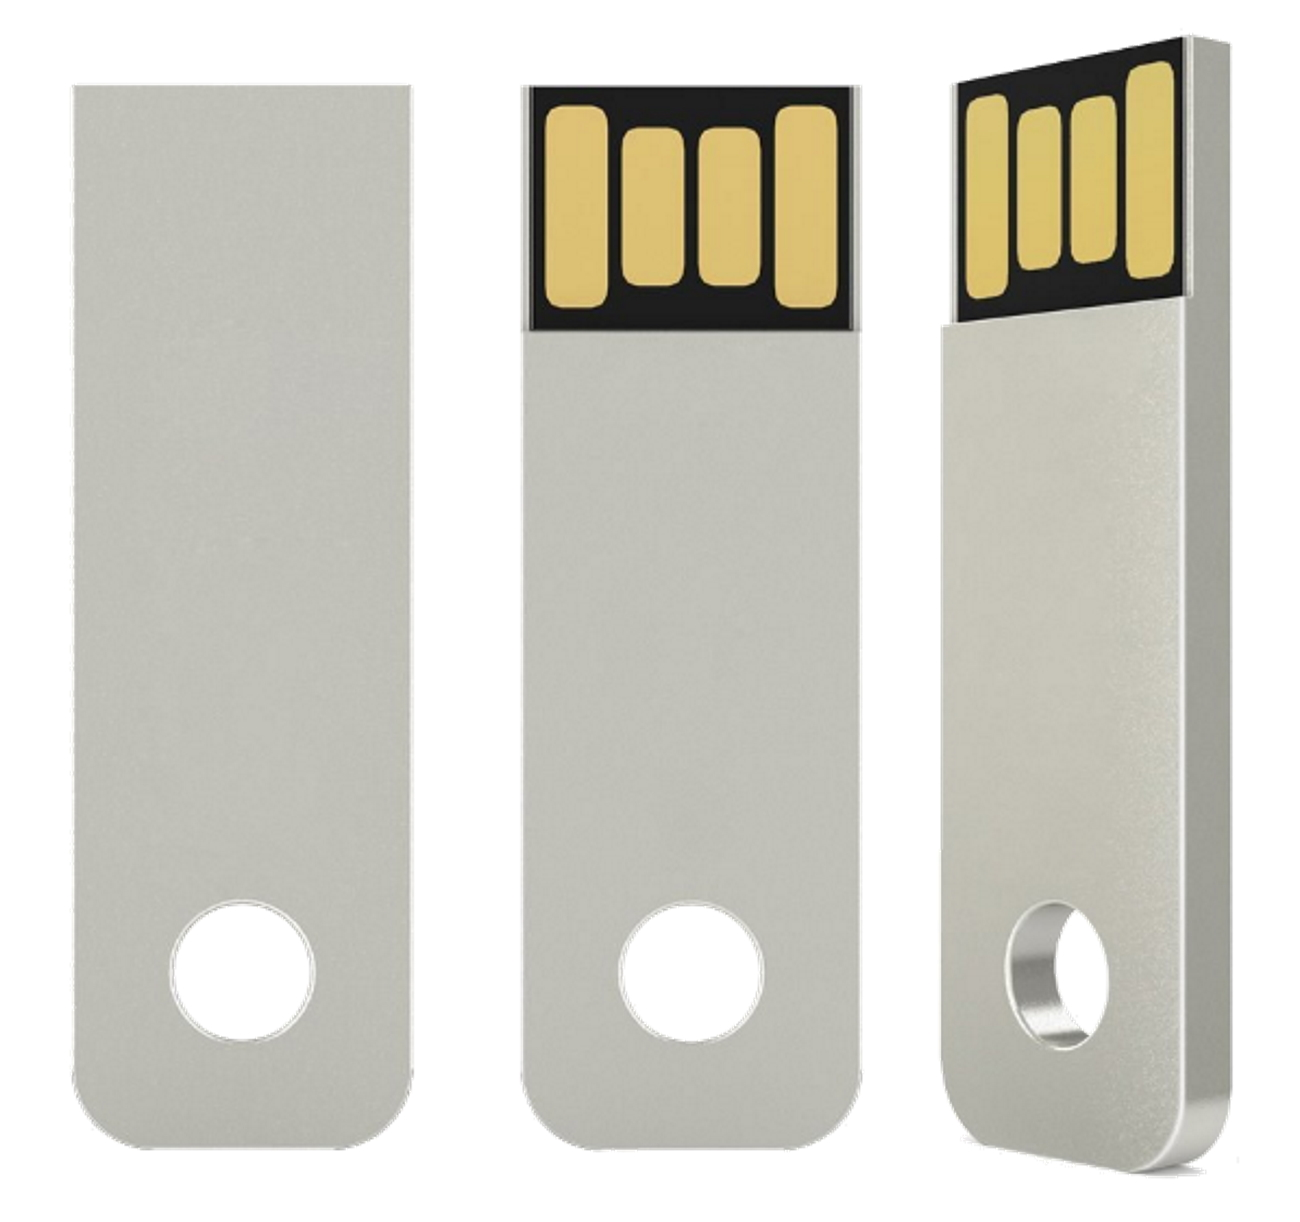 ®Mini USB-Stick GB) GERMANY (Silber, Key USB 16